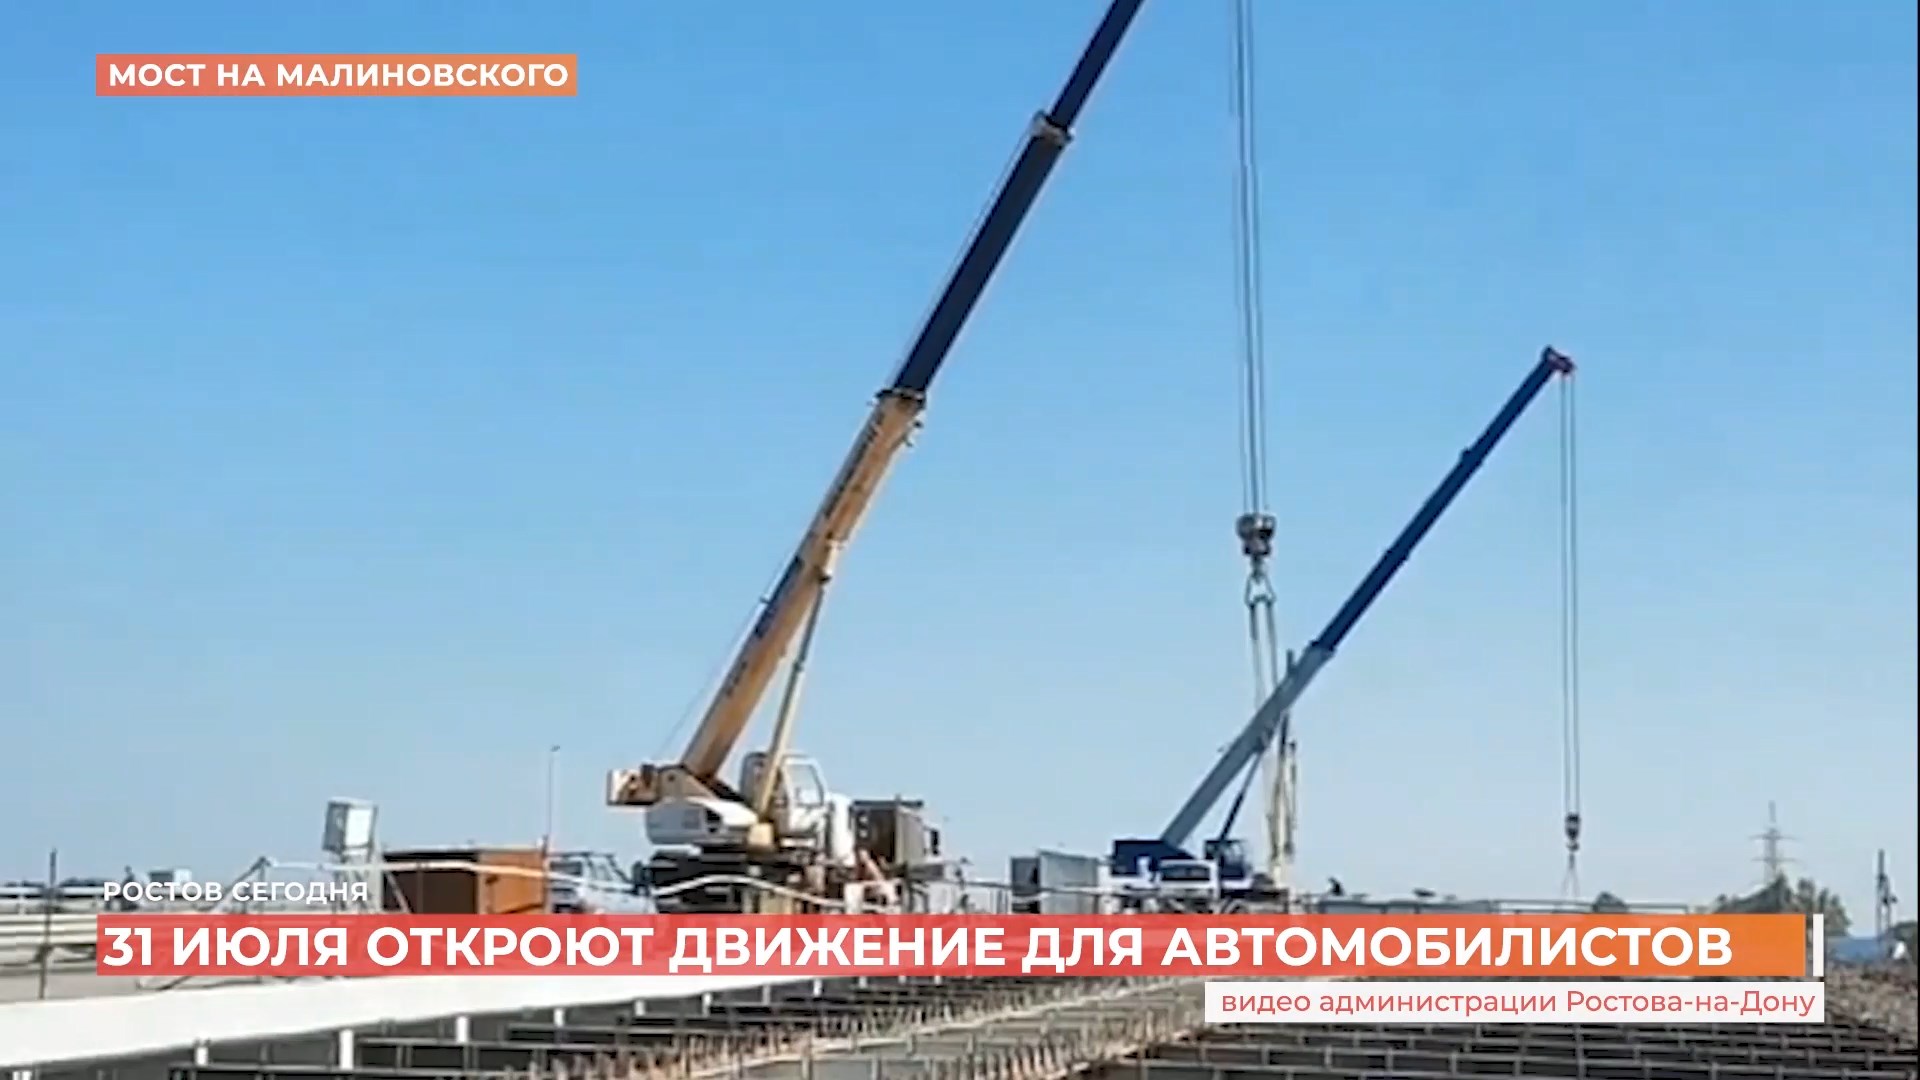 Мост на Малиновского откроют для автомобилистов к 31 июля